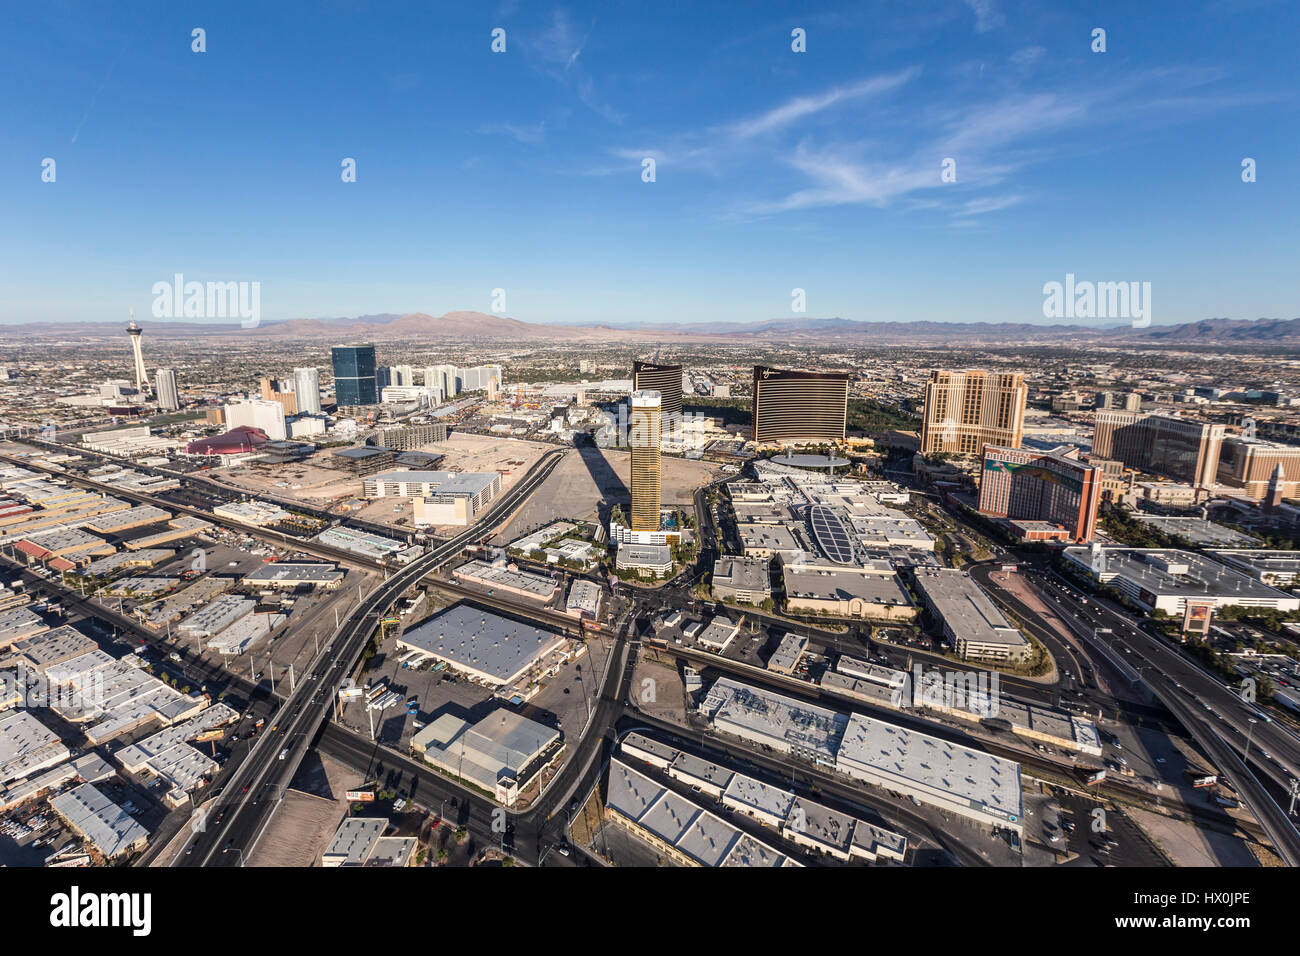 Las Vegas, Nevada, USA - March 13, 2017:  Aerial view of casino resort towers on the Las Vegas strip. Stock Photo